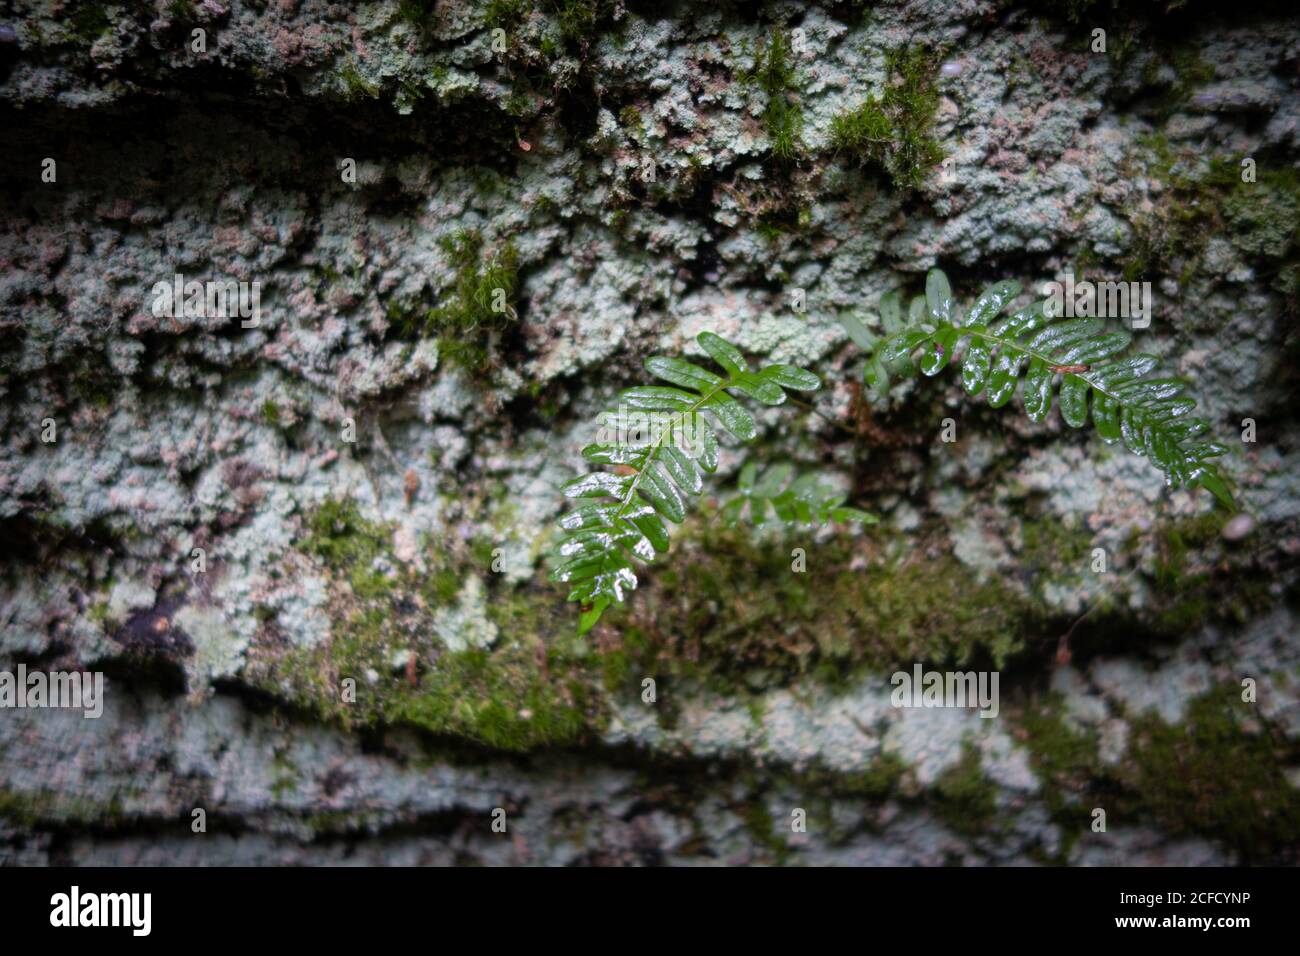 Moss en rocas en el Parque Escénico Panama Rocks, Condado de Chautauqua, Nueva York, Estados Unidos - un antiguo bosque petrificado de conglomerado de cuarzo Foto de stock